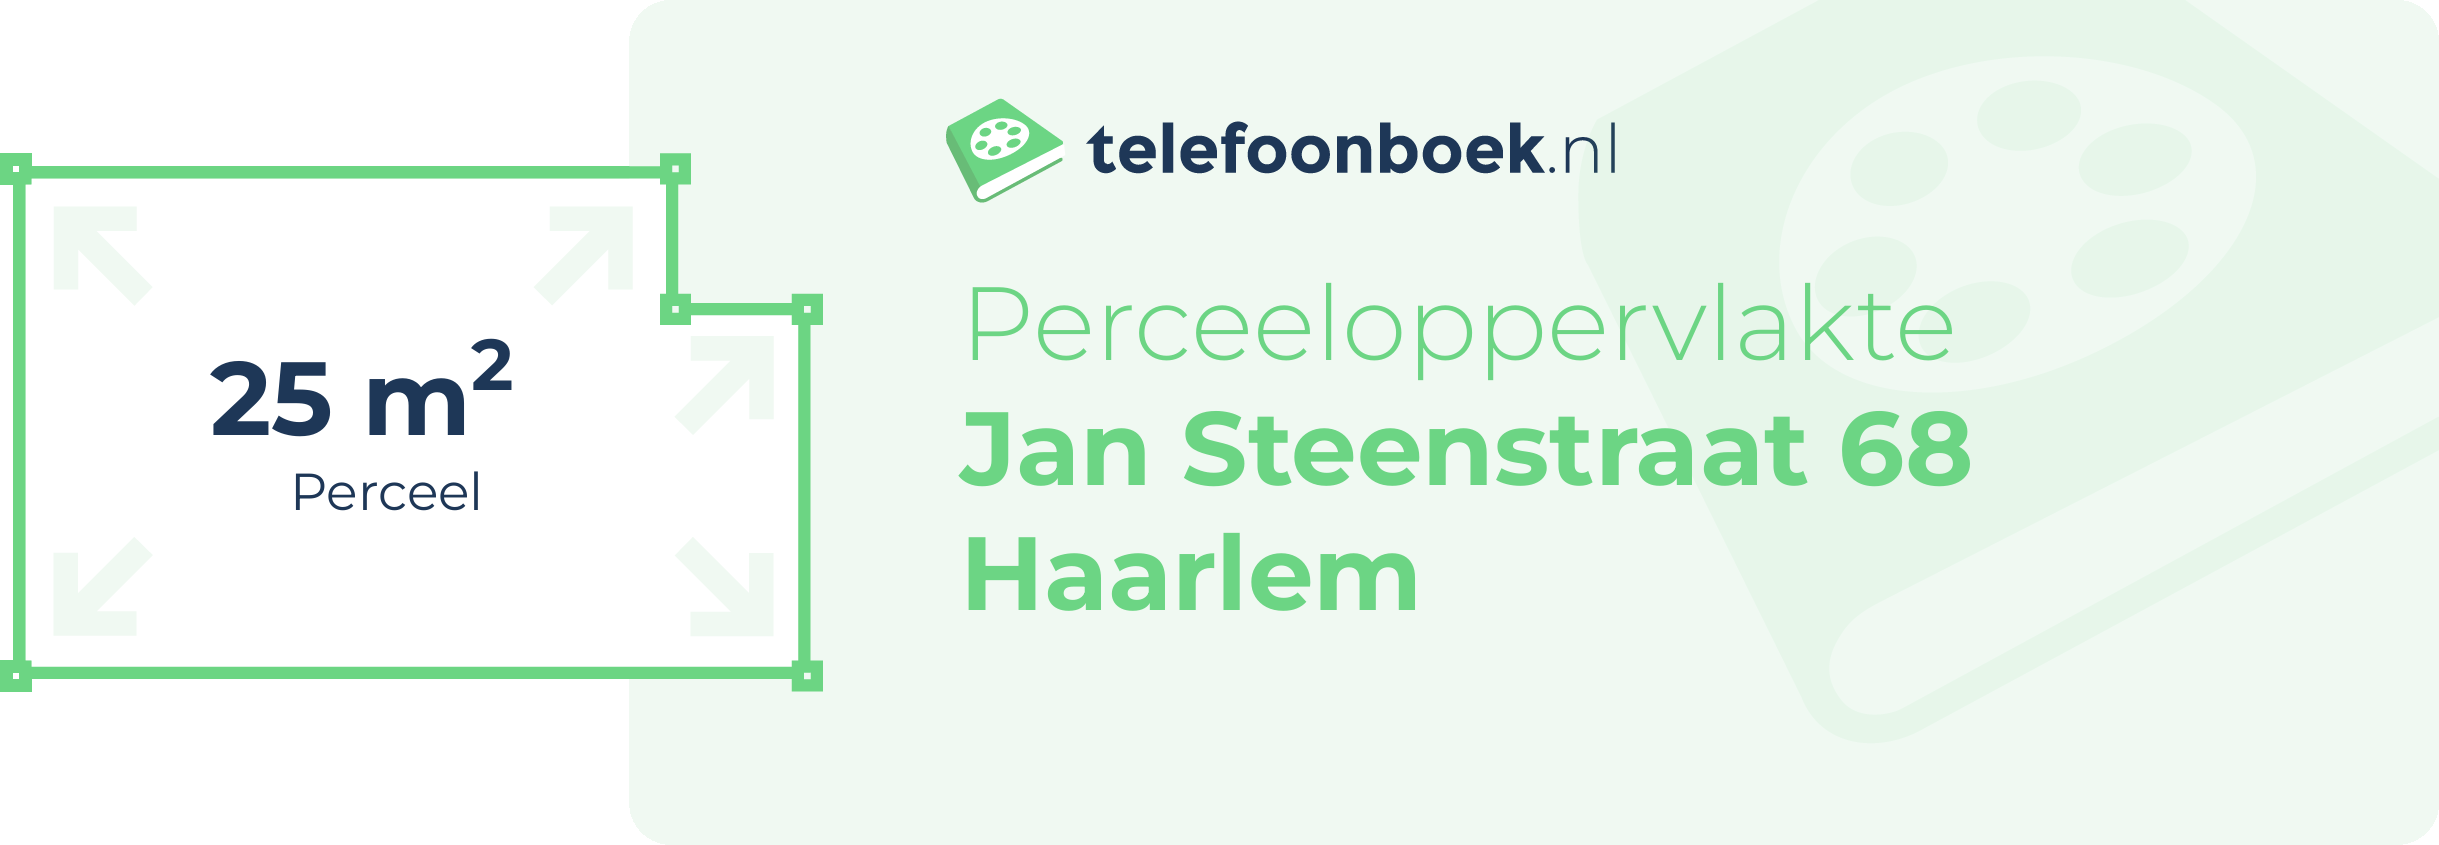 Perceeloppervlakte Jan Steenstraat 68 Haarlem